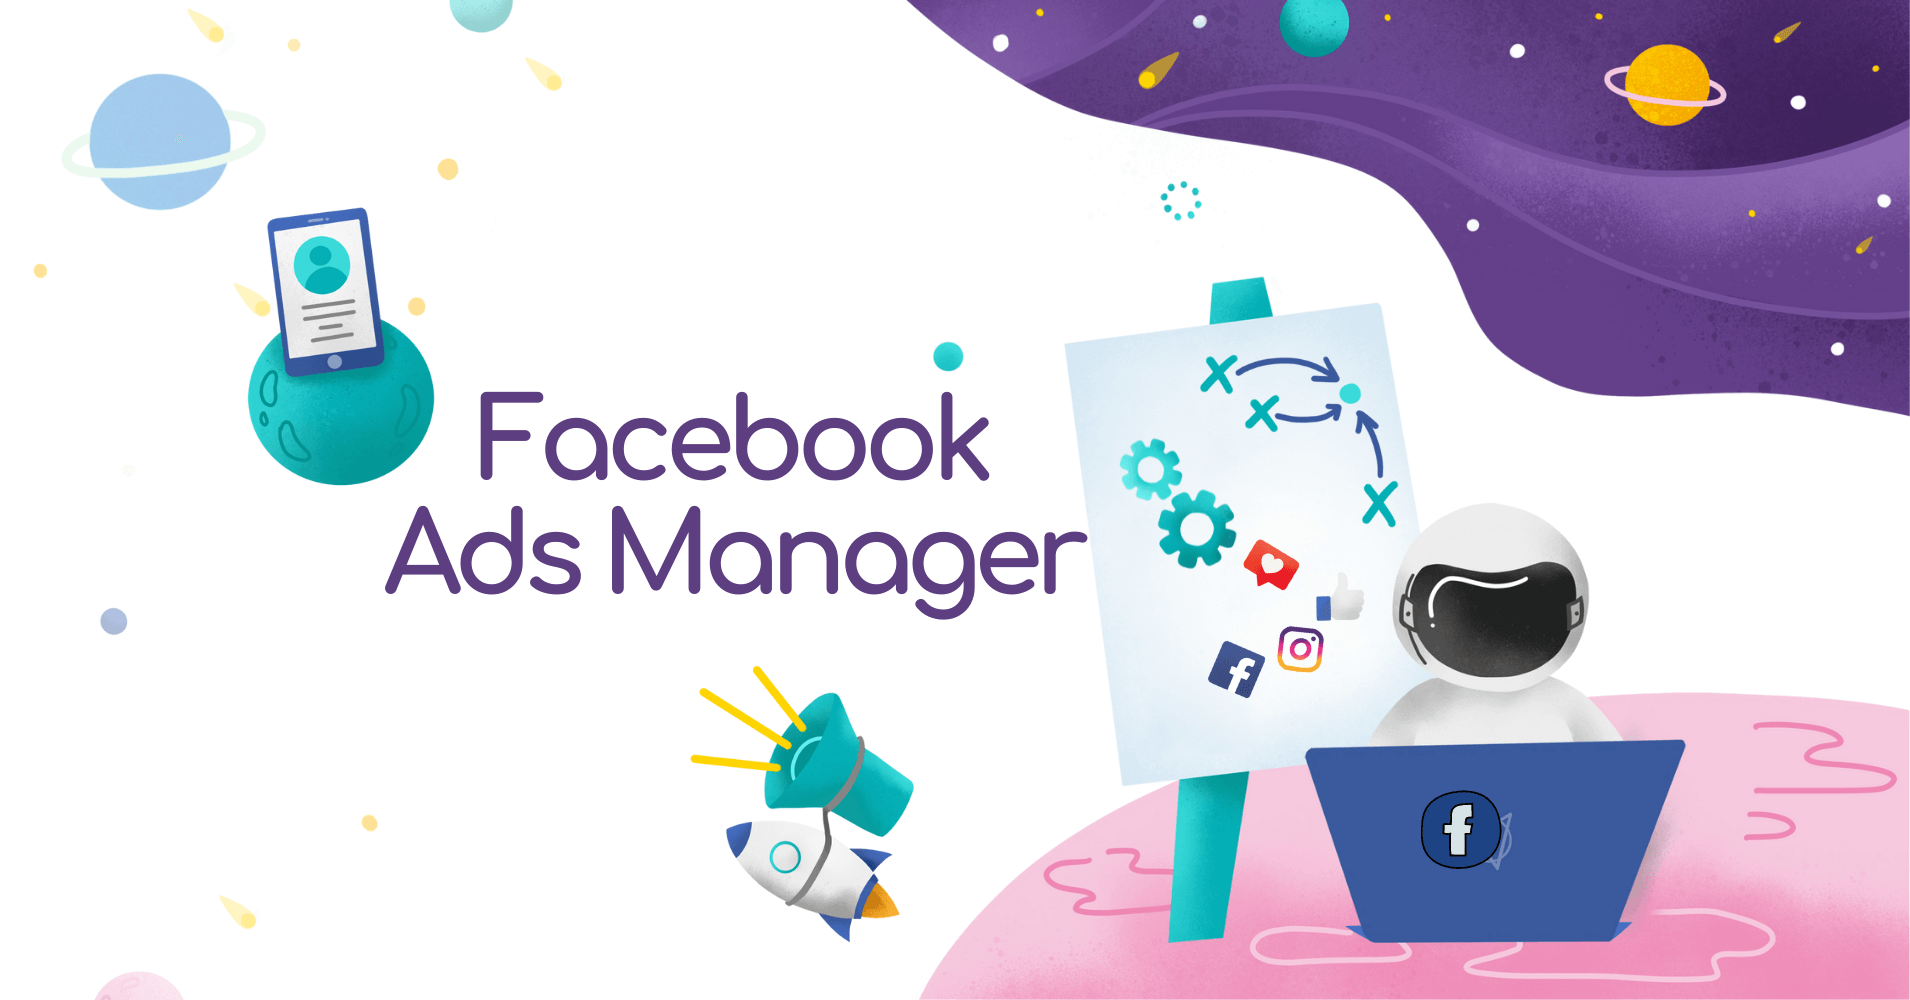 Czym jest i jak używać Facebook Ads Manager, czyli konto reklamowe na Facebooku?